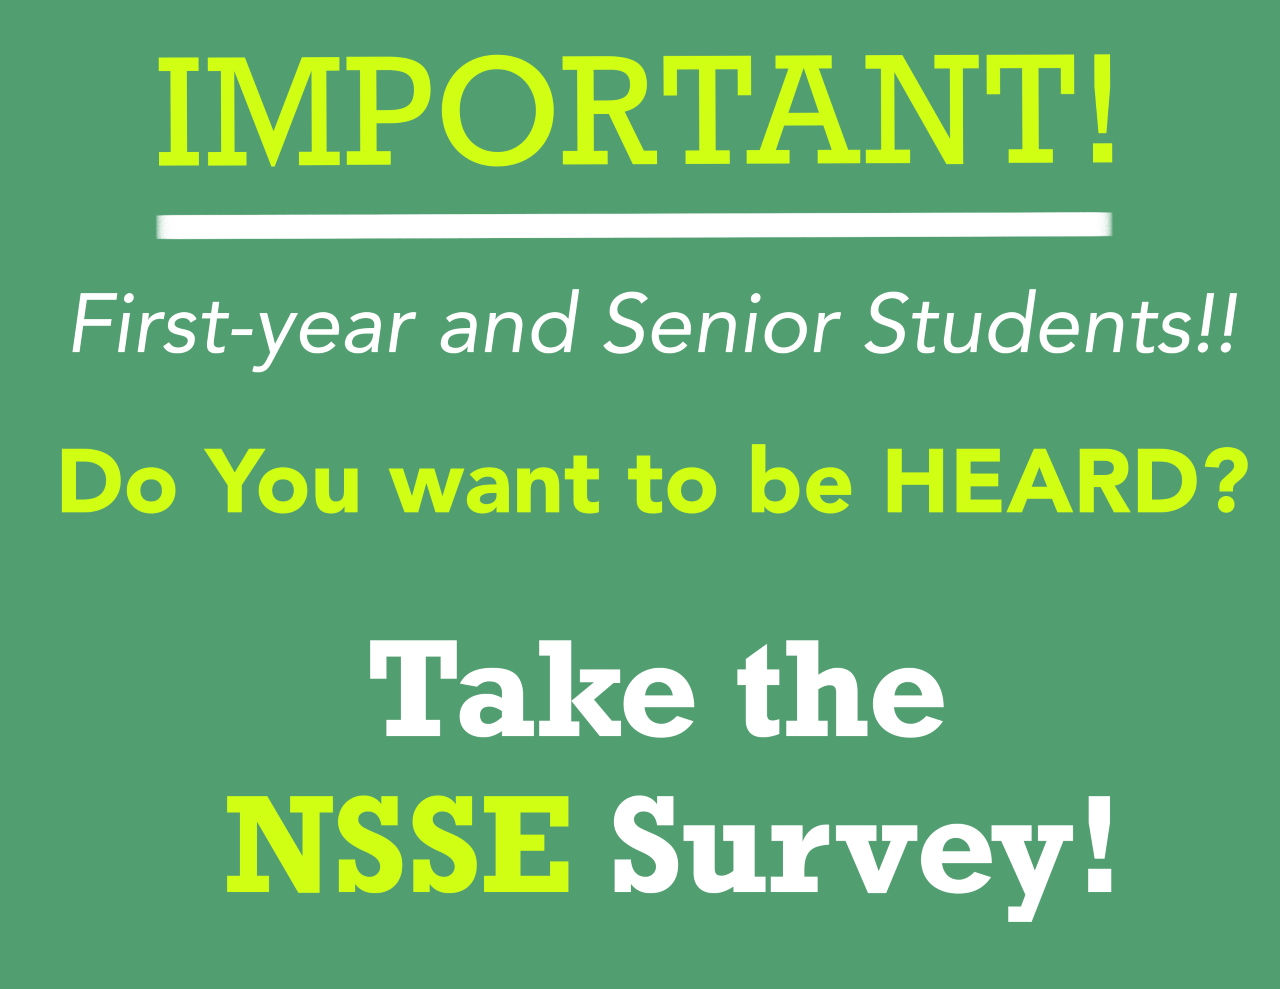 Take the NSSE Survey!